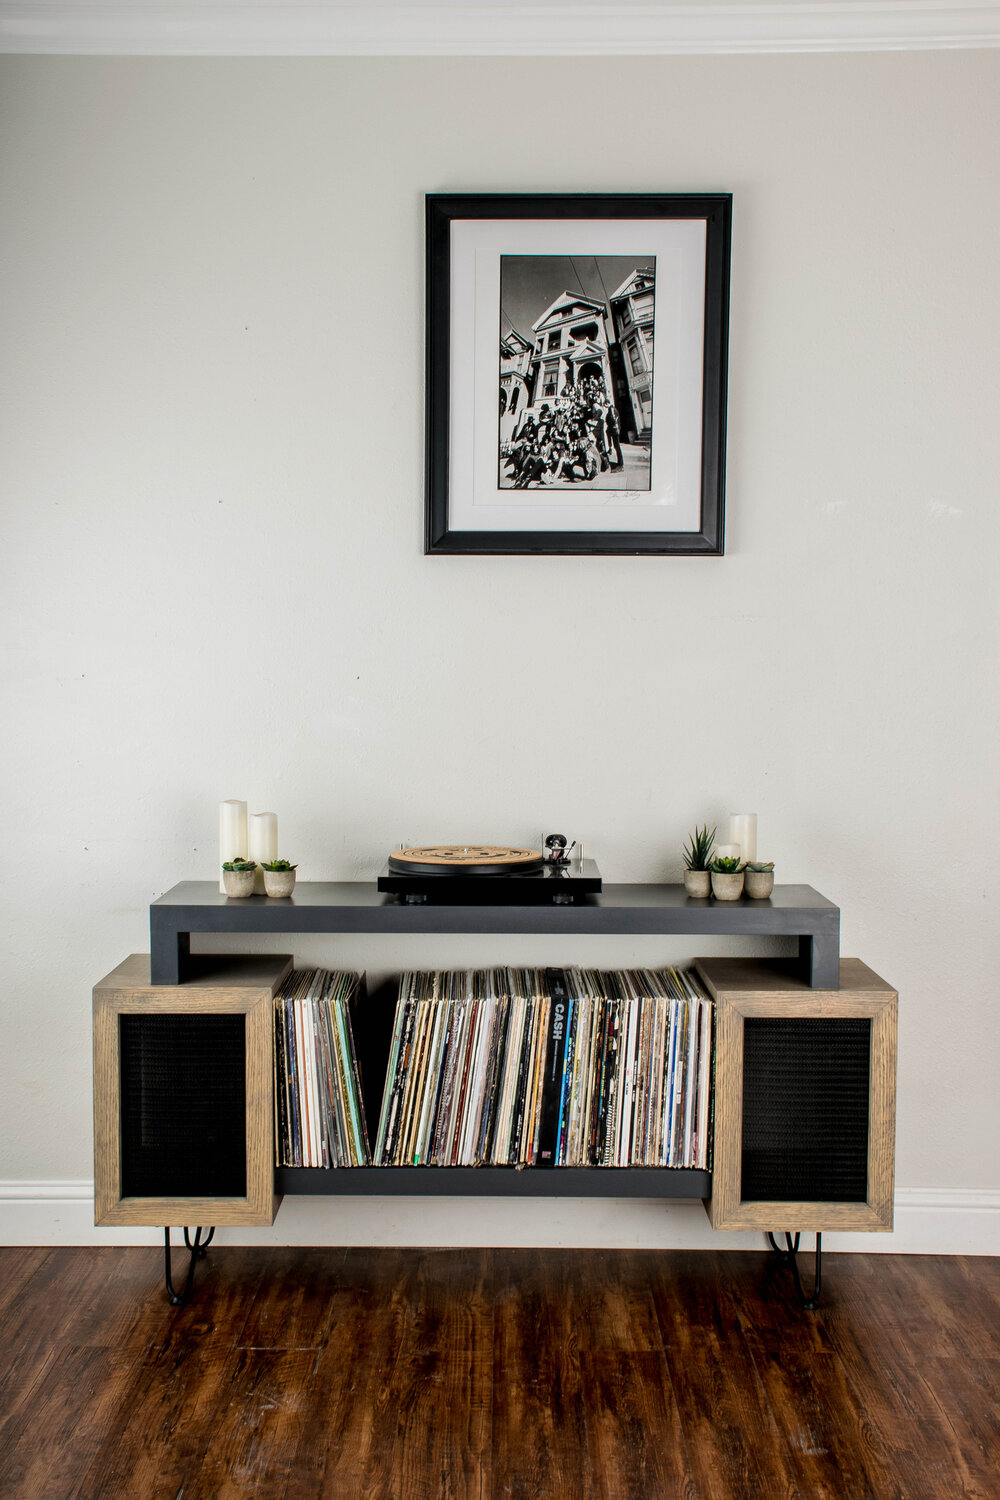 The 3Sec Vinyl Record Storage